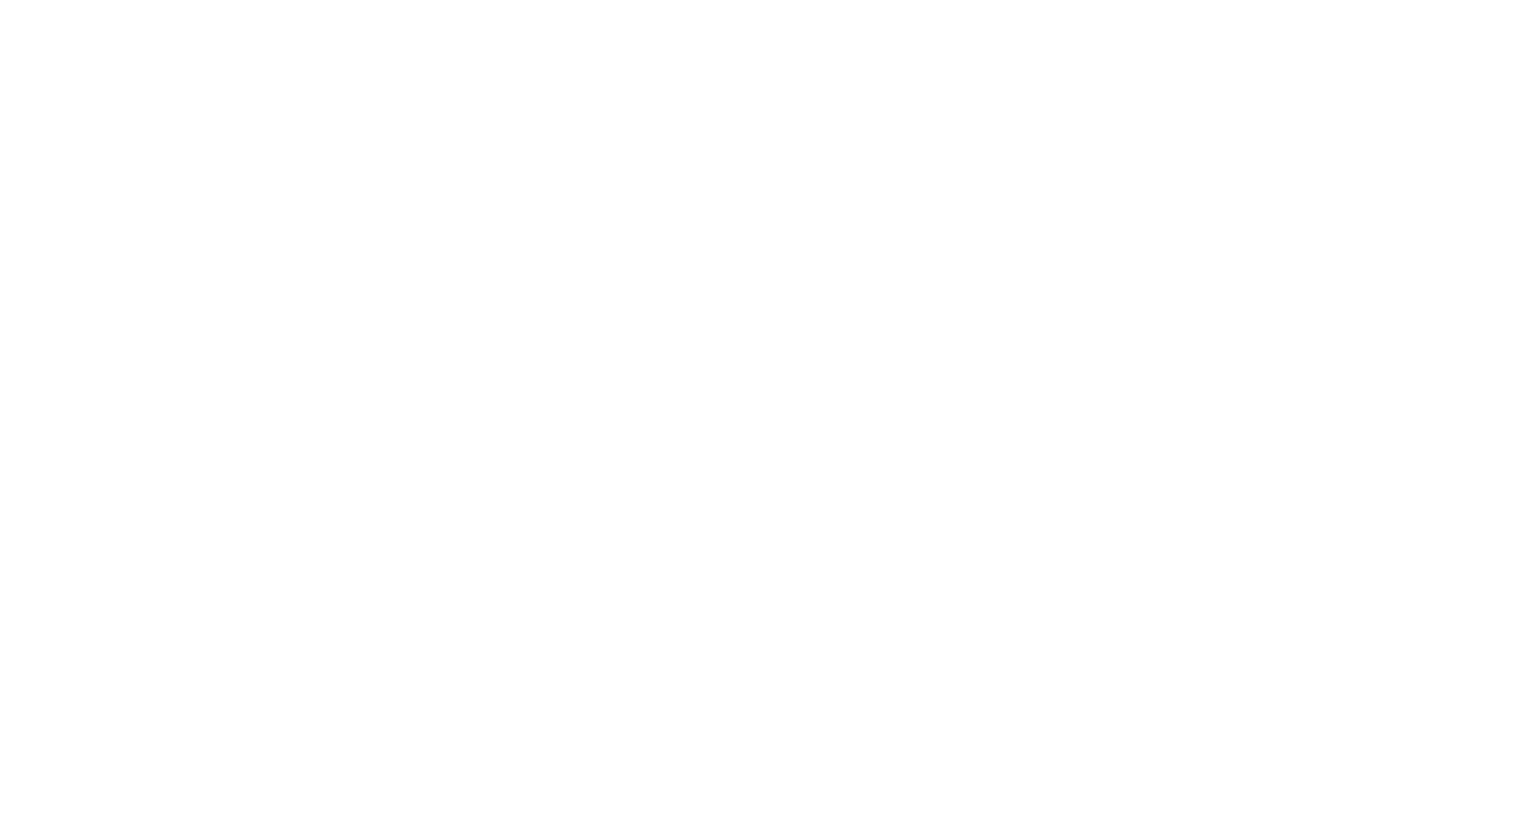 Кейс сервиса BRANDNATION - Фирменный стиль венчурной экосистемы. Брендинговое агентство BRANDNATION в Москве и Санкт-Петербурге. Услуги: разработка логотипа и фирменного стиля, дизайн упаковки, брендбук, ребрендинг, разработка сайта.